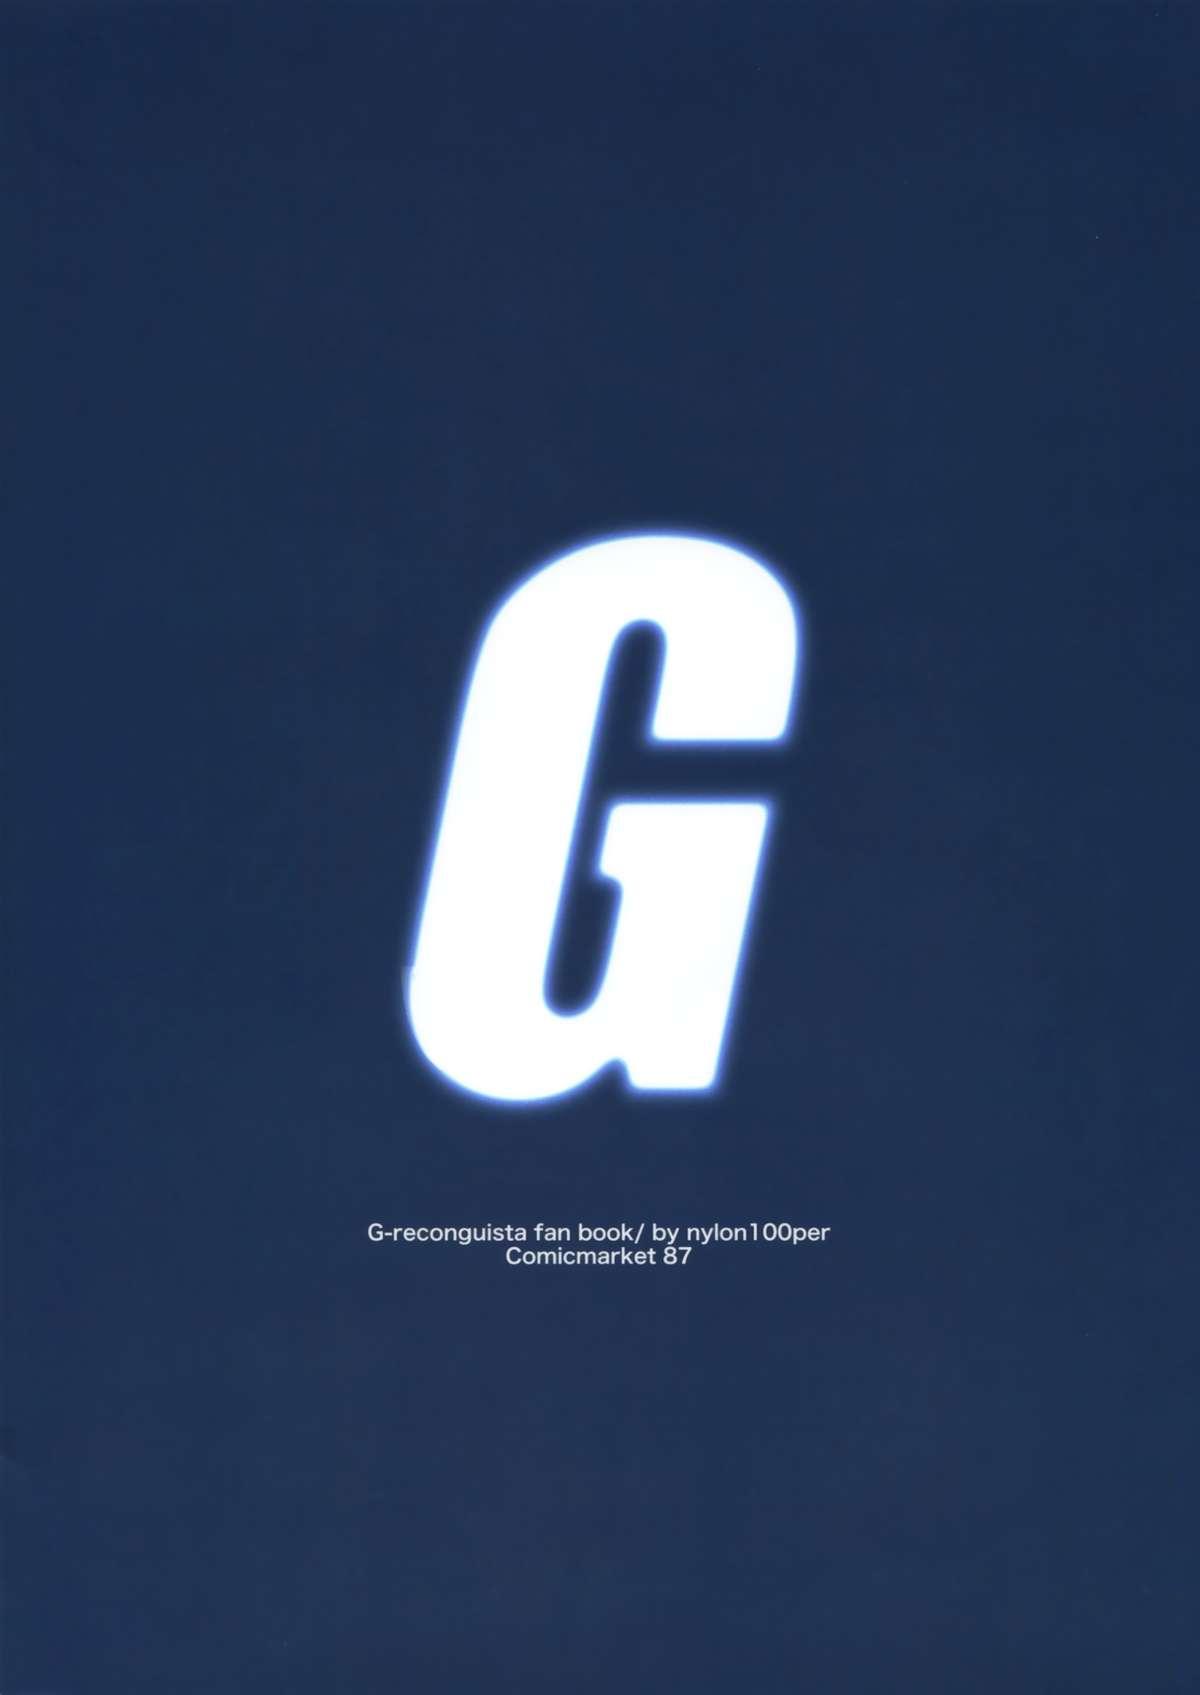 G 1